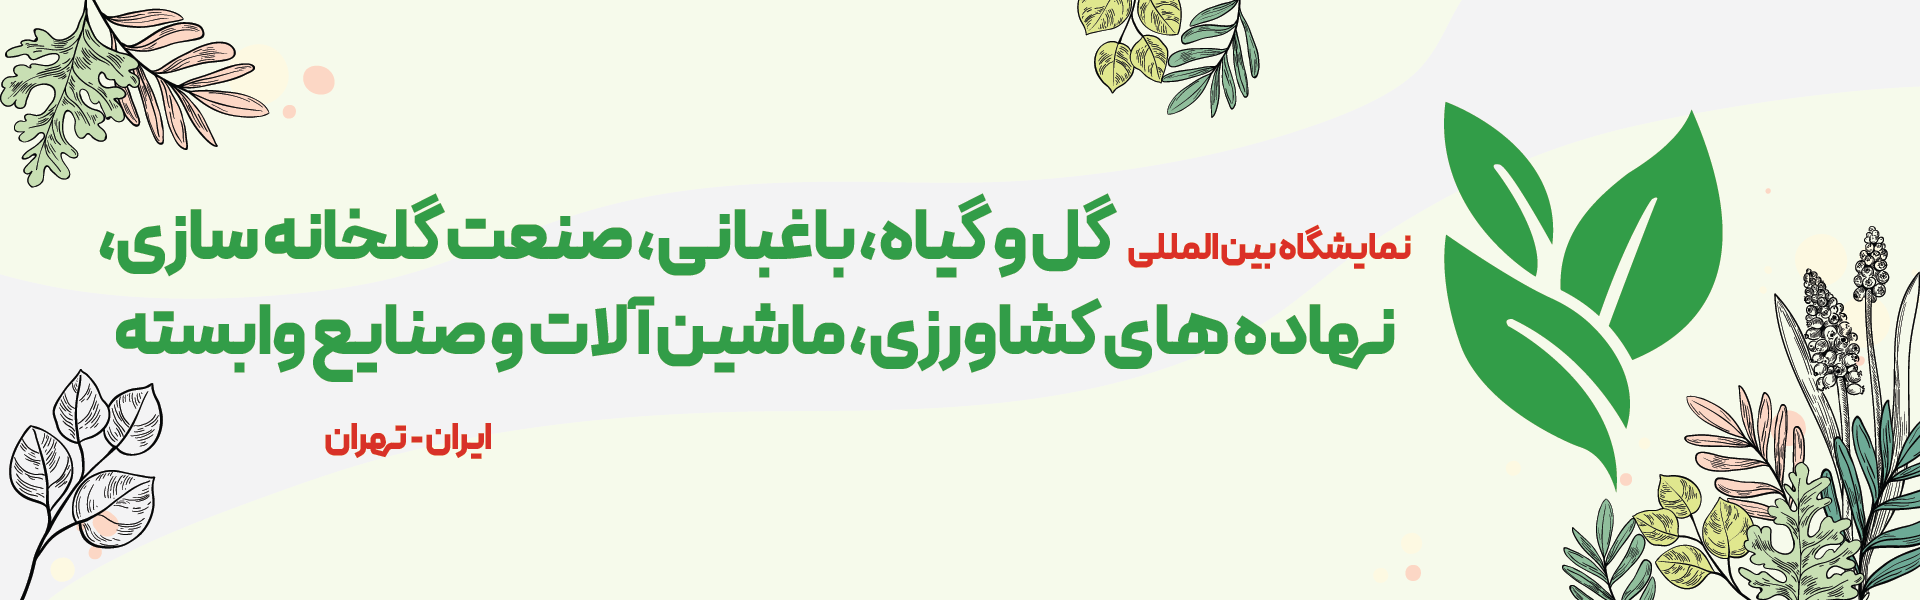 نمایشگاه بین المللی گل و گیاه و صنعت گلخانه تهران ایران